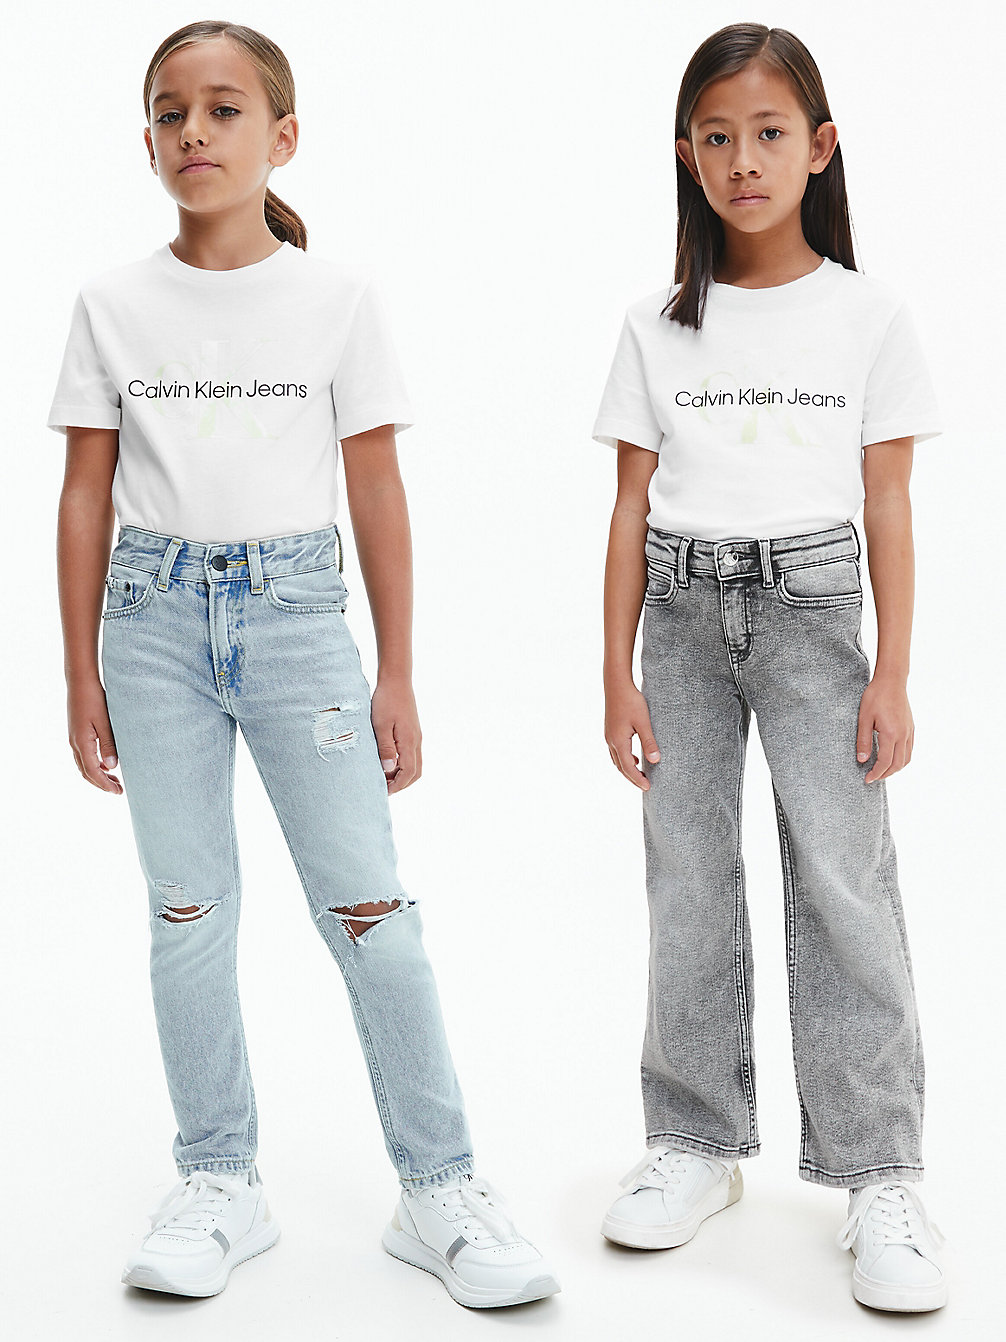 BRIGHT WHITE Unisex Logo T-Shirt undefined kids unisex Calvin Klein